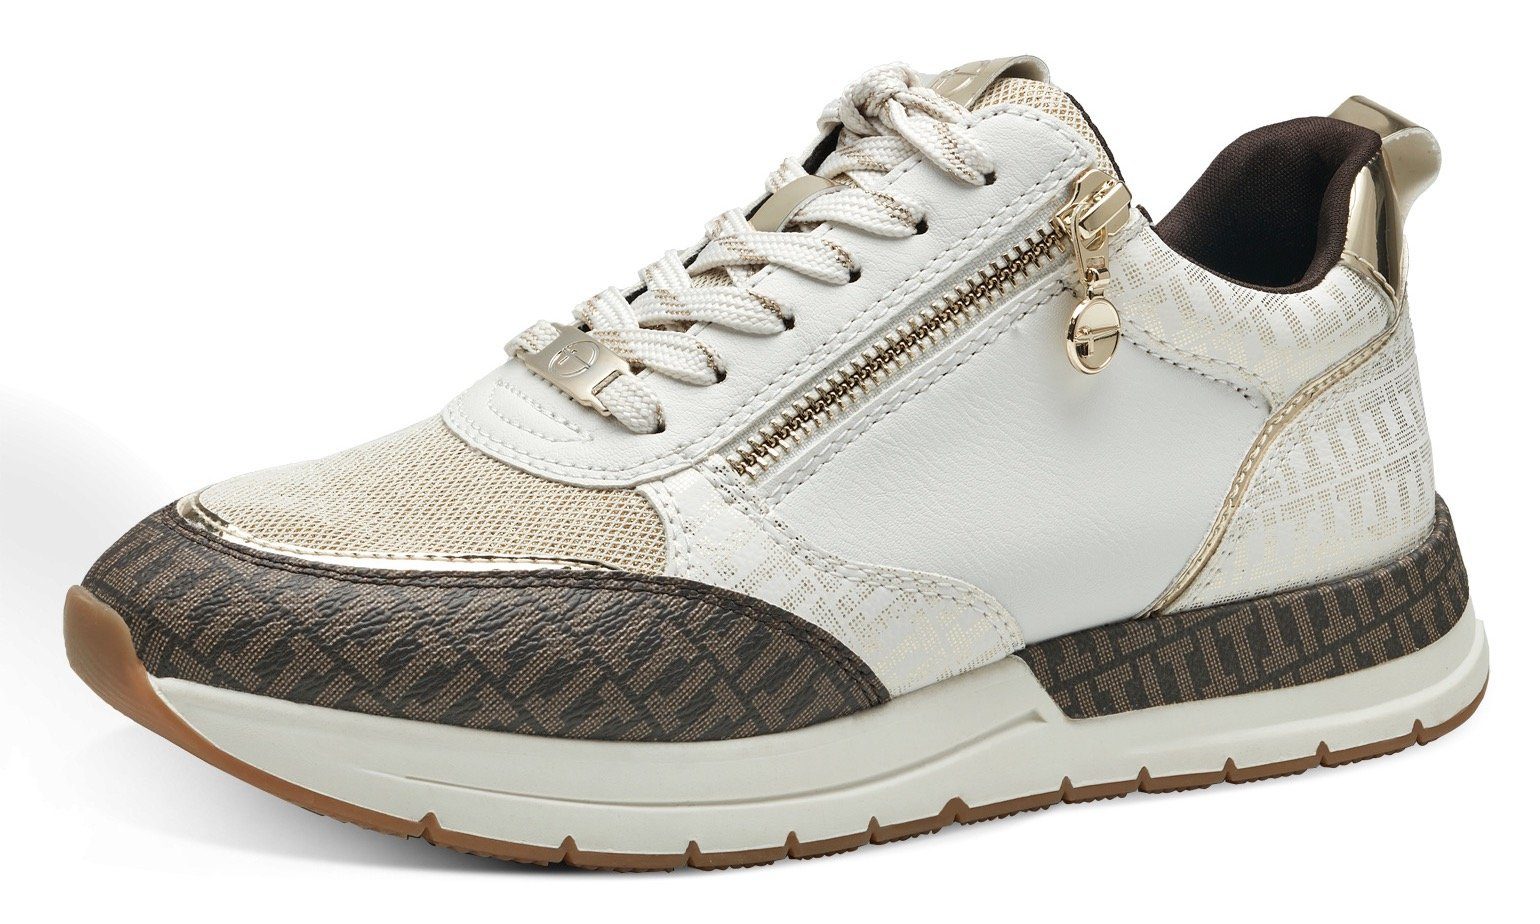 Tamaris Sneaker mit trendigen Metallic-Details offwhite kombiniert